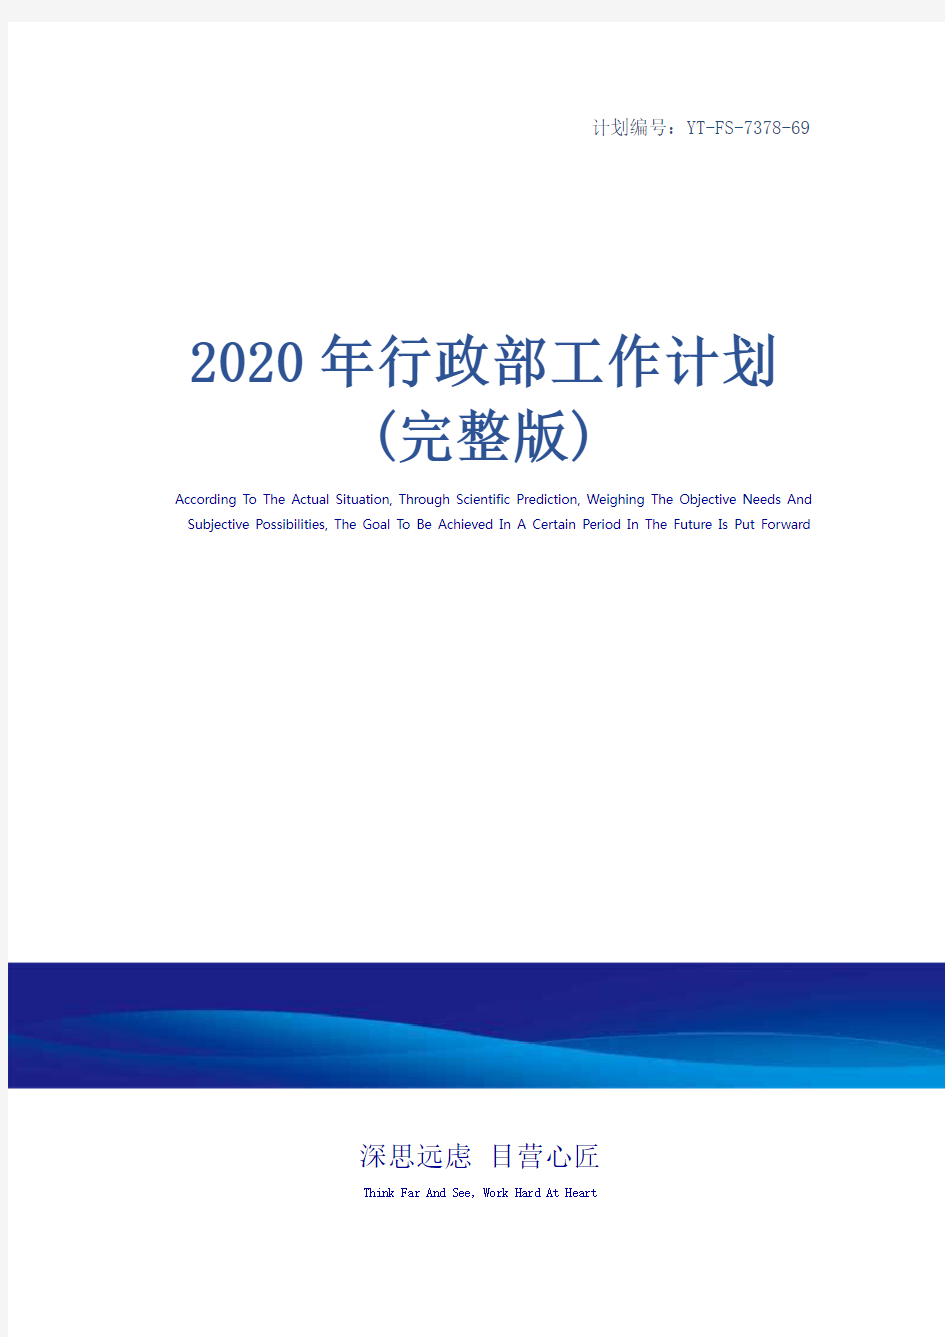 2020年行政部工作计划(完整版)